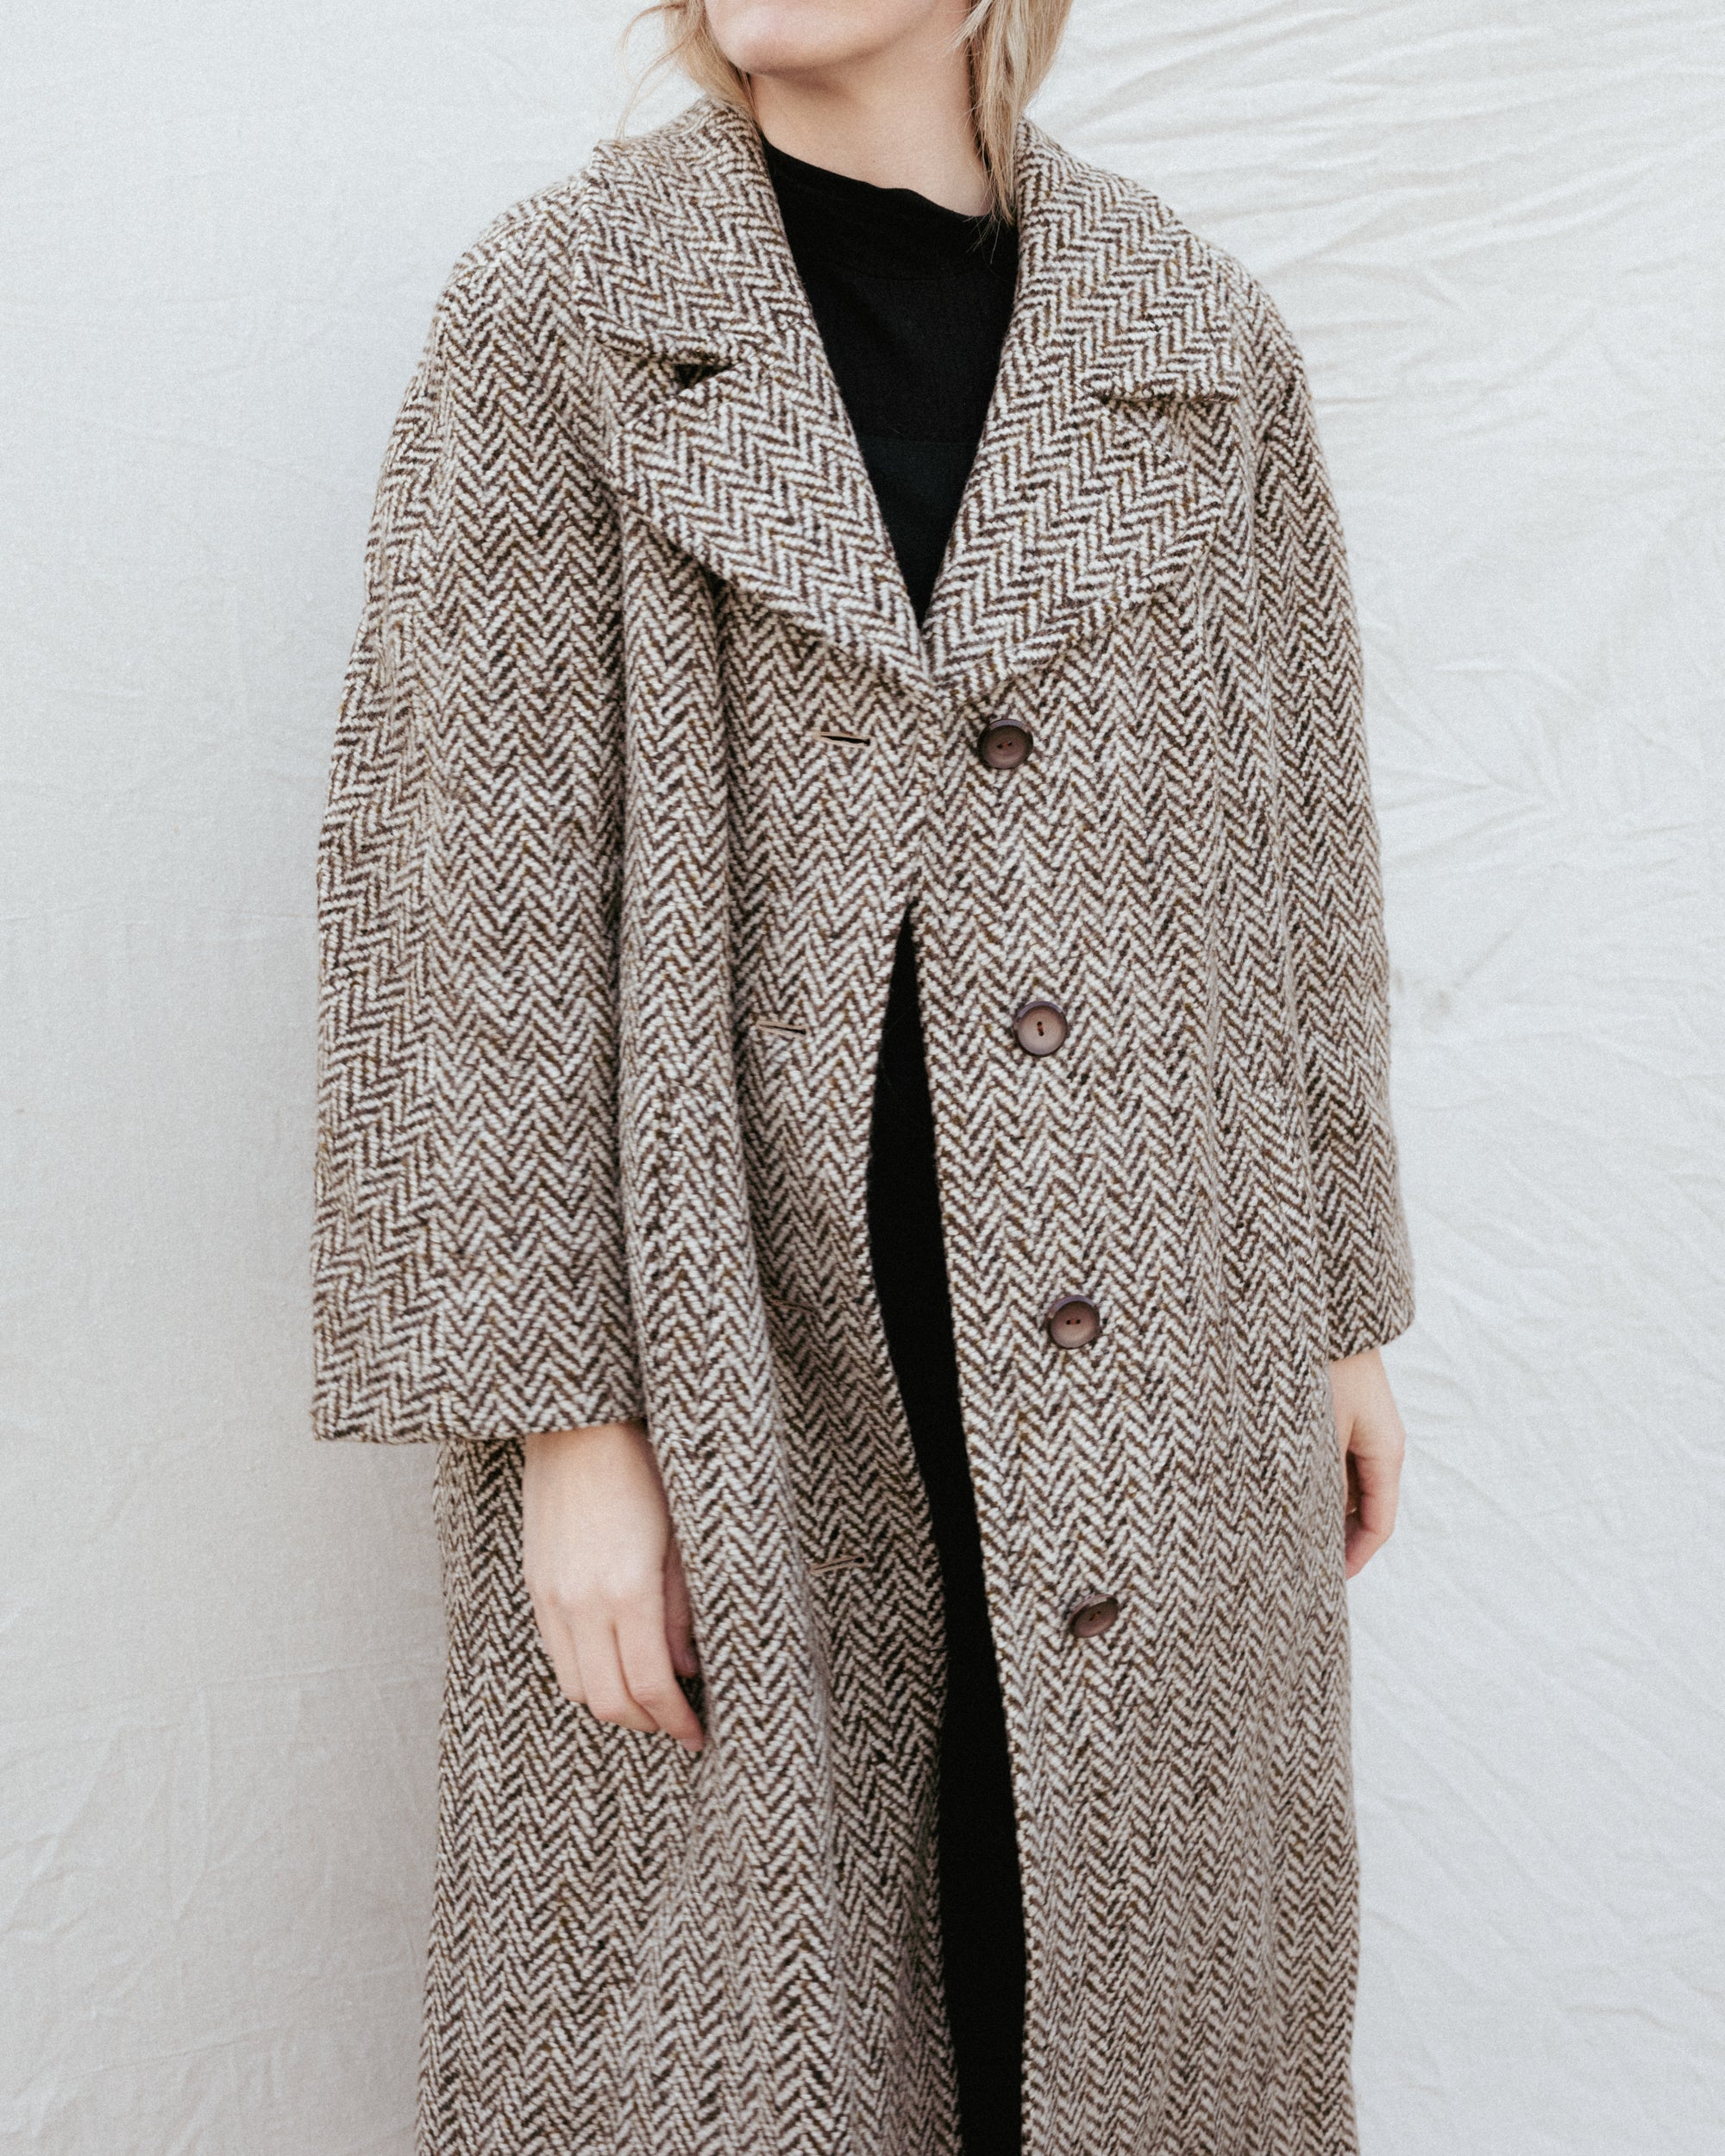 Vintage Wool Herringbone BERLIN Coat #3 (S/M) – Closed Caption